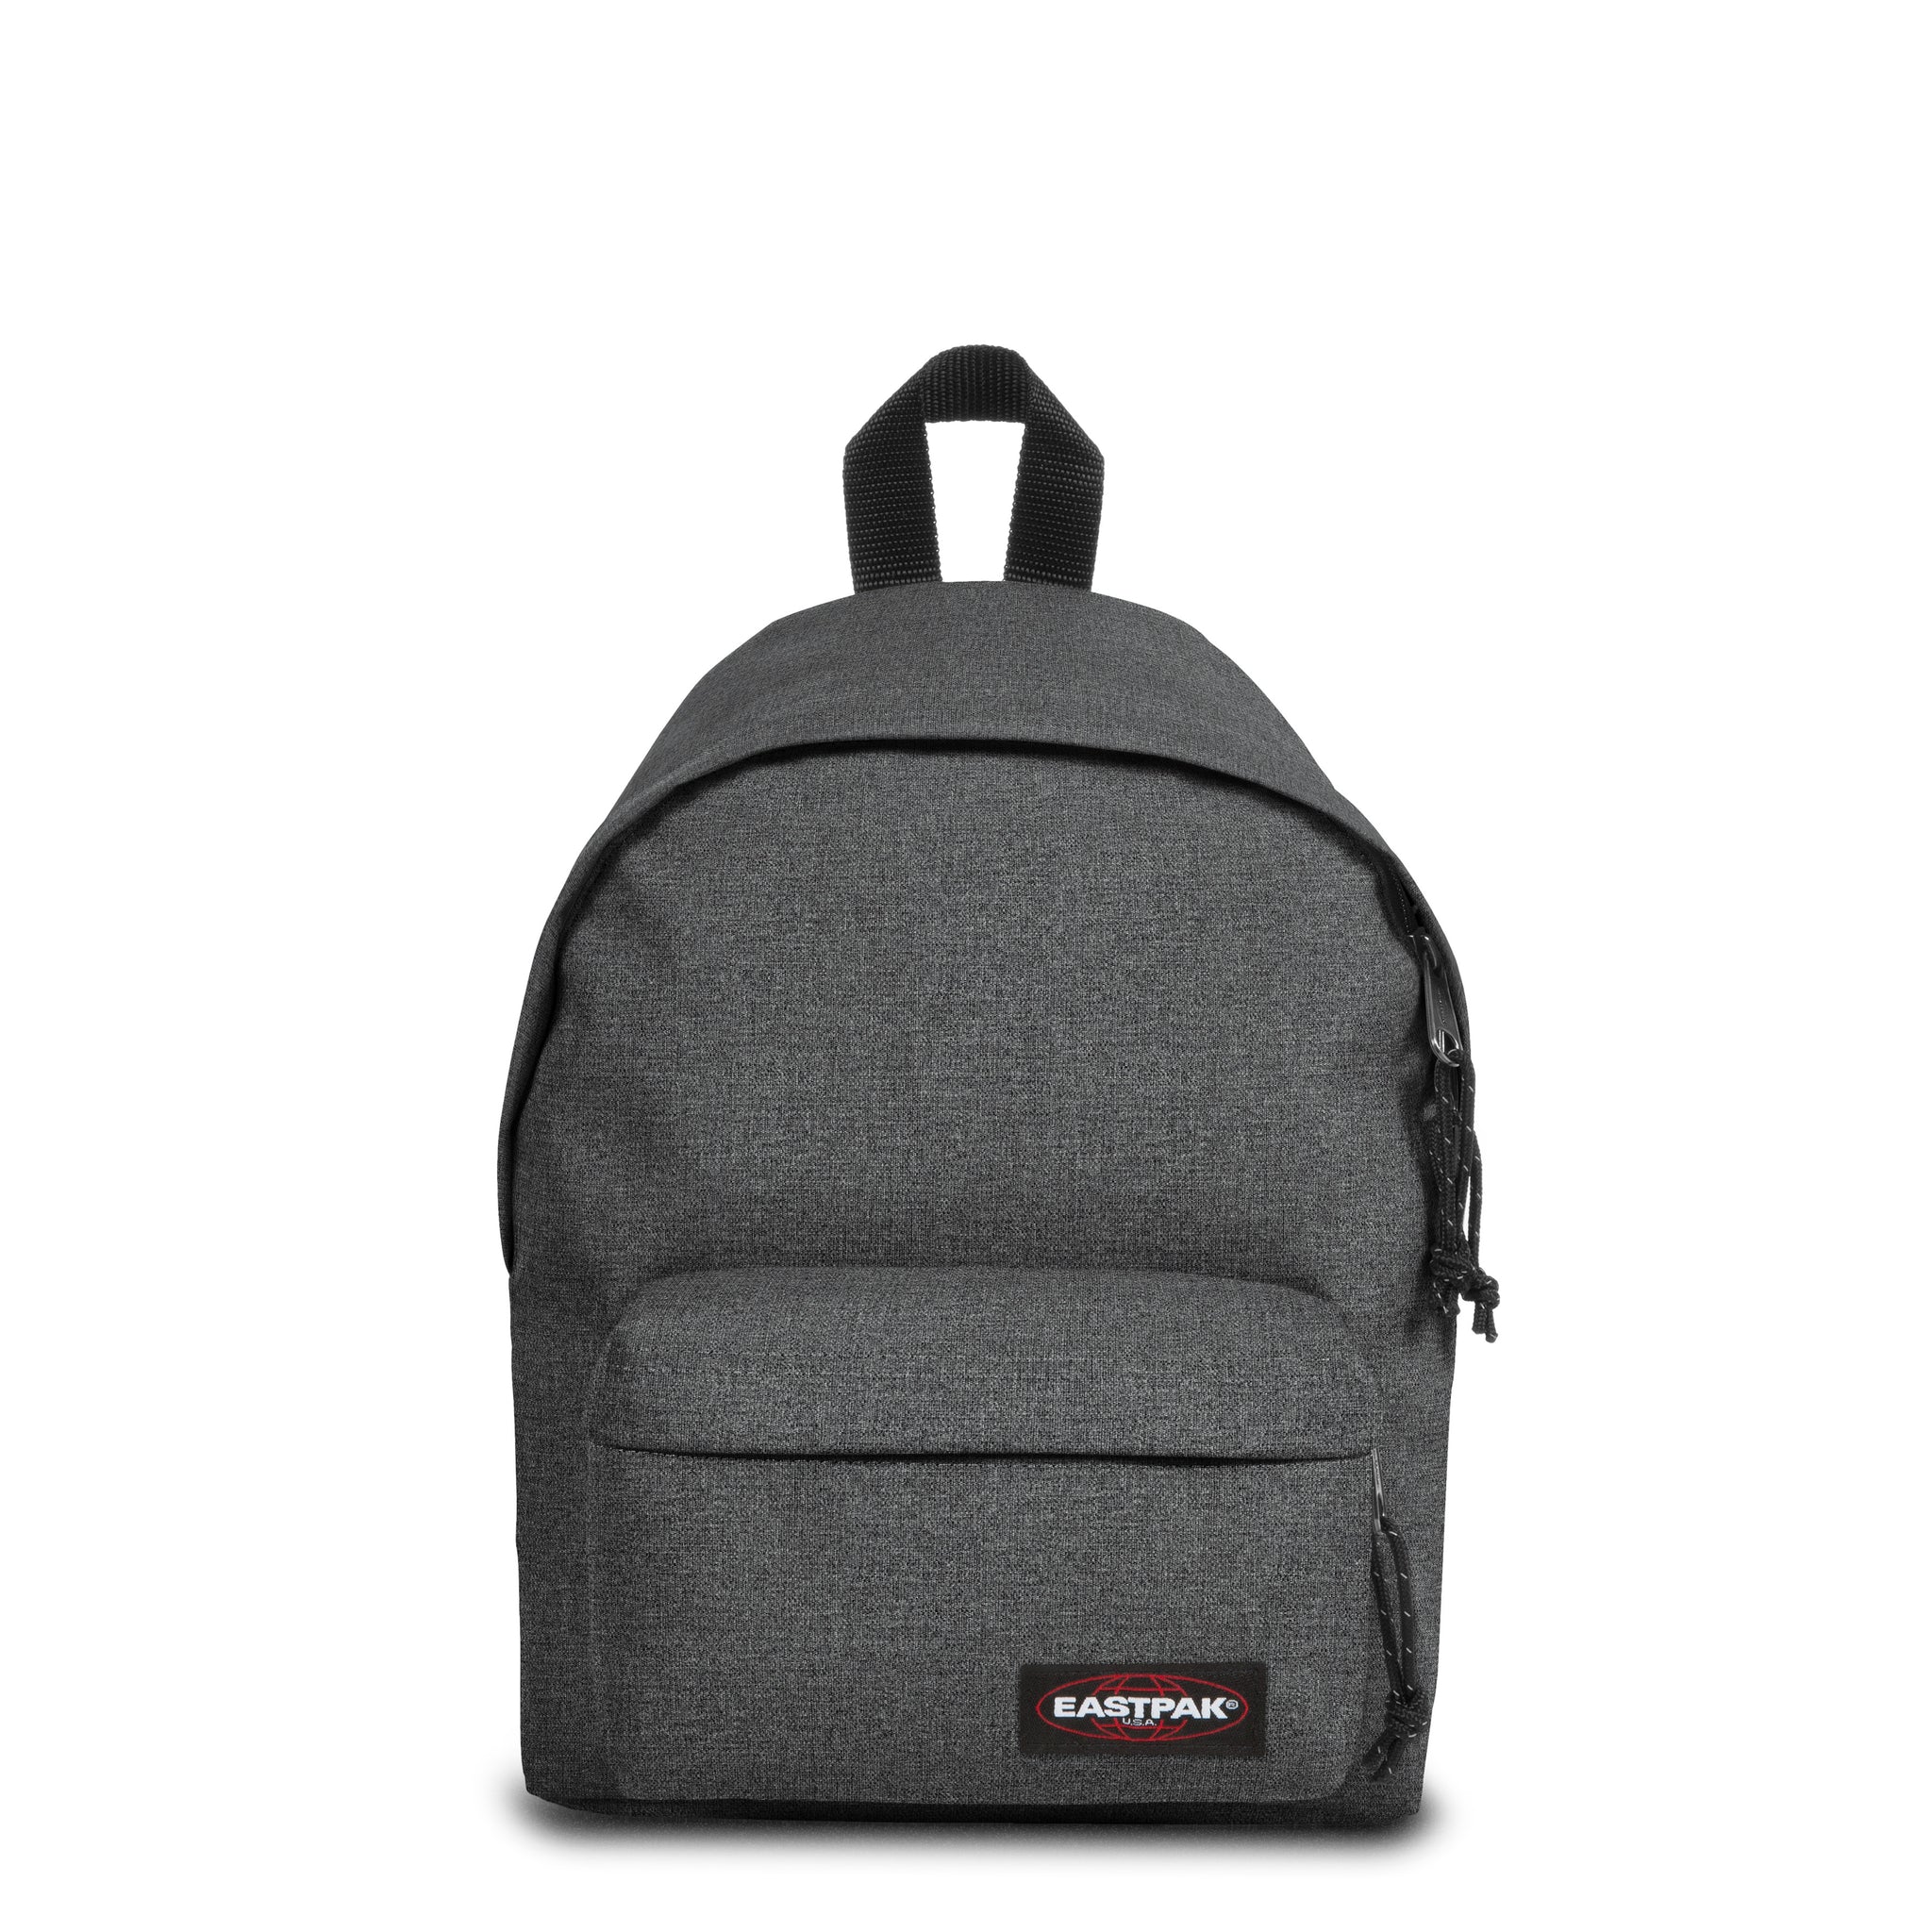 eastpak the ultimate backpack